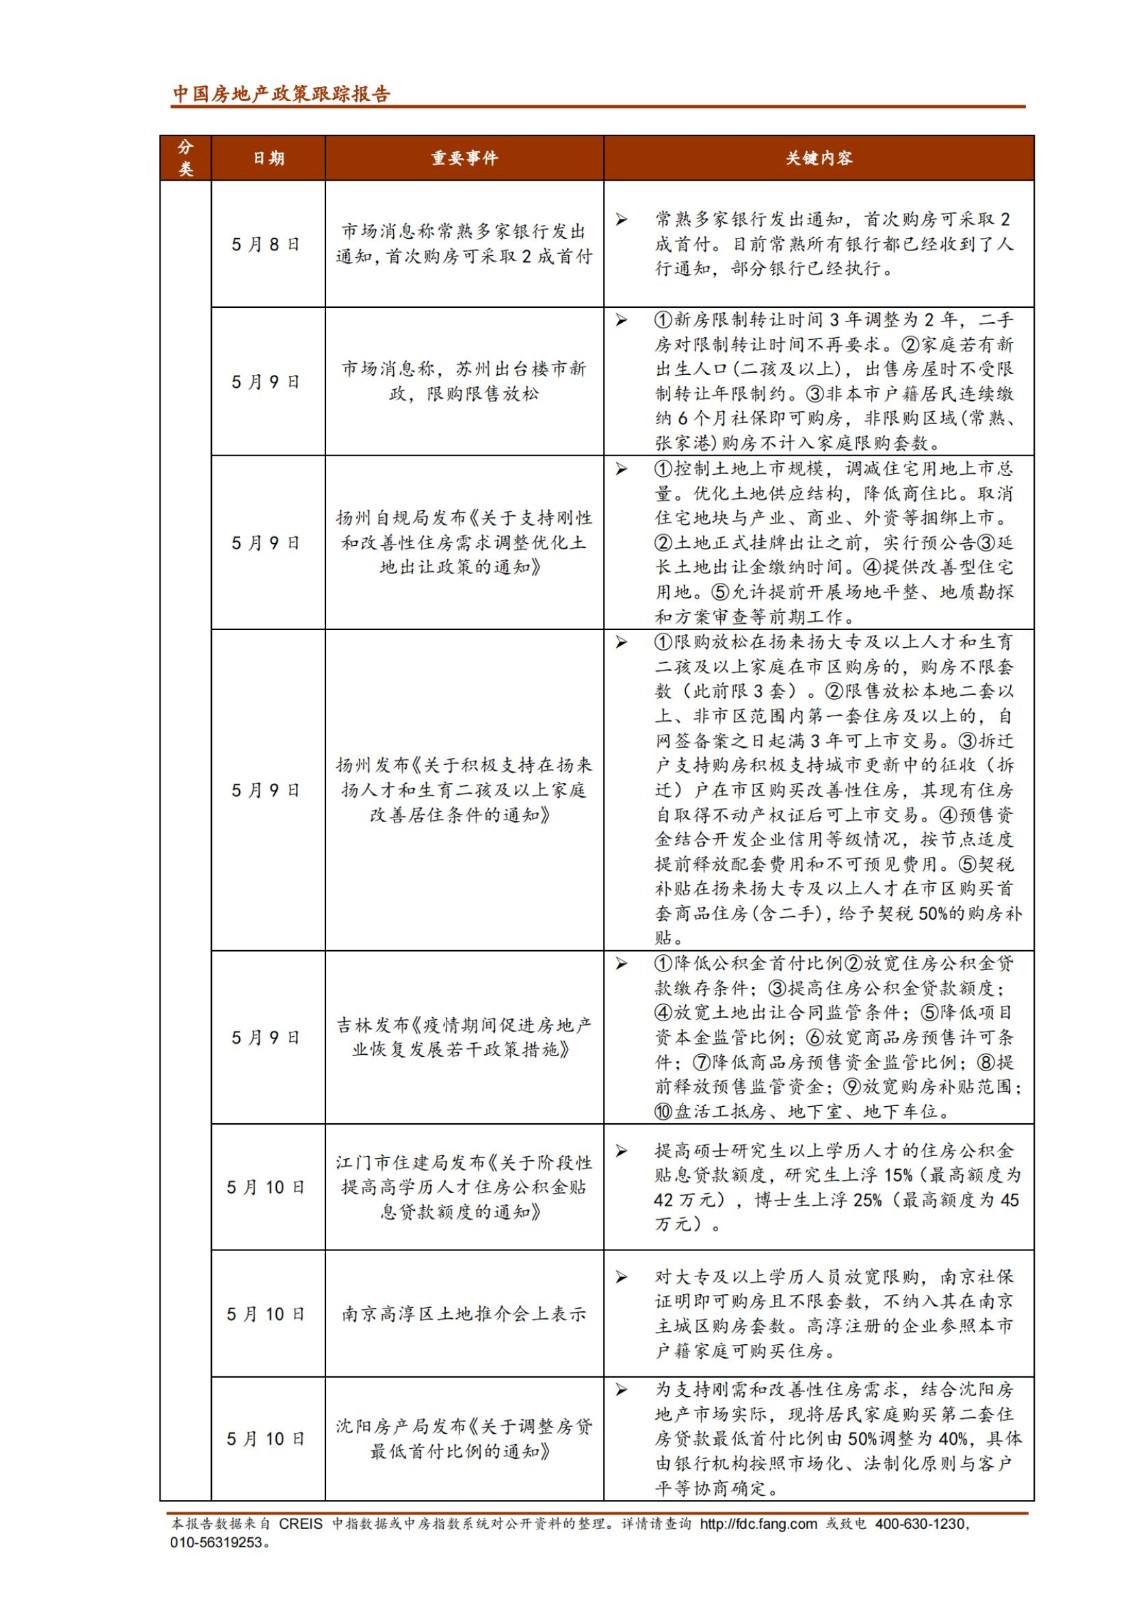 《中指丨中国房地产政策跟踪报告（2022年5月）》_纯图版_06.jpg